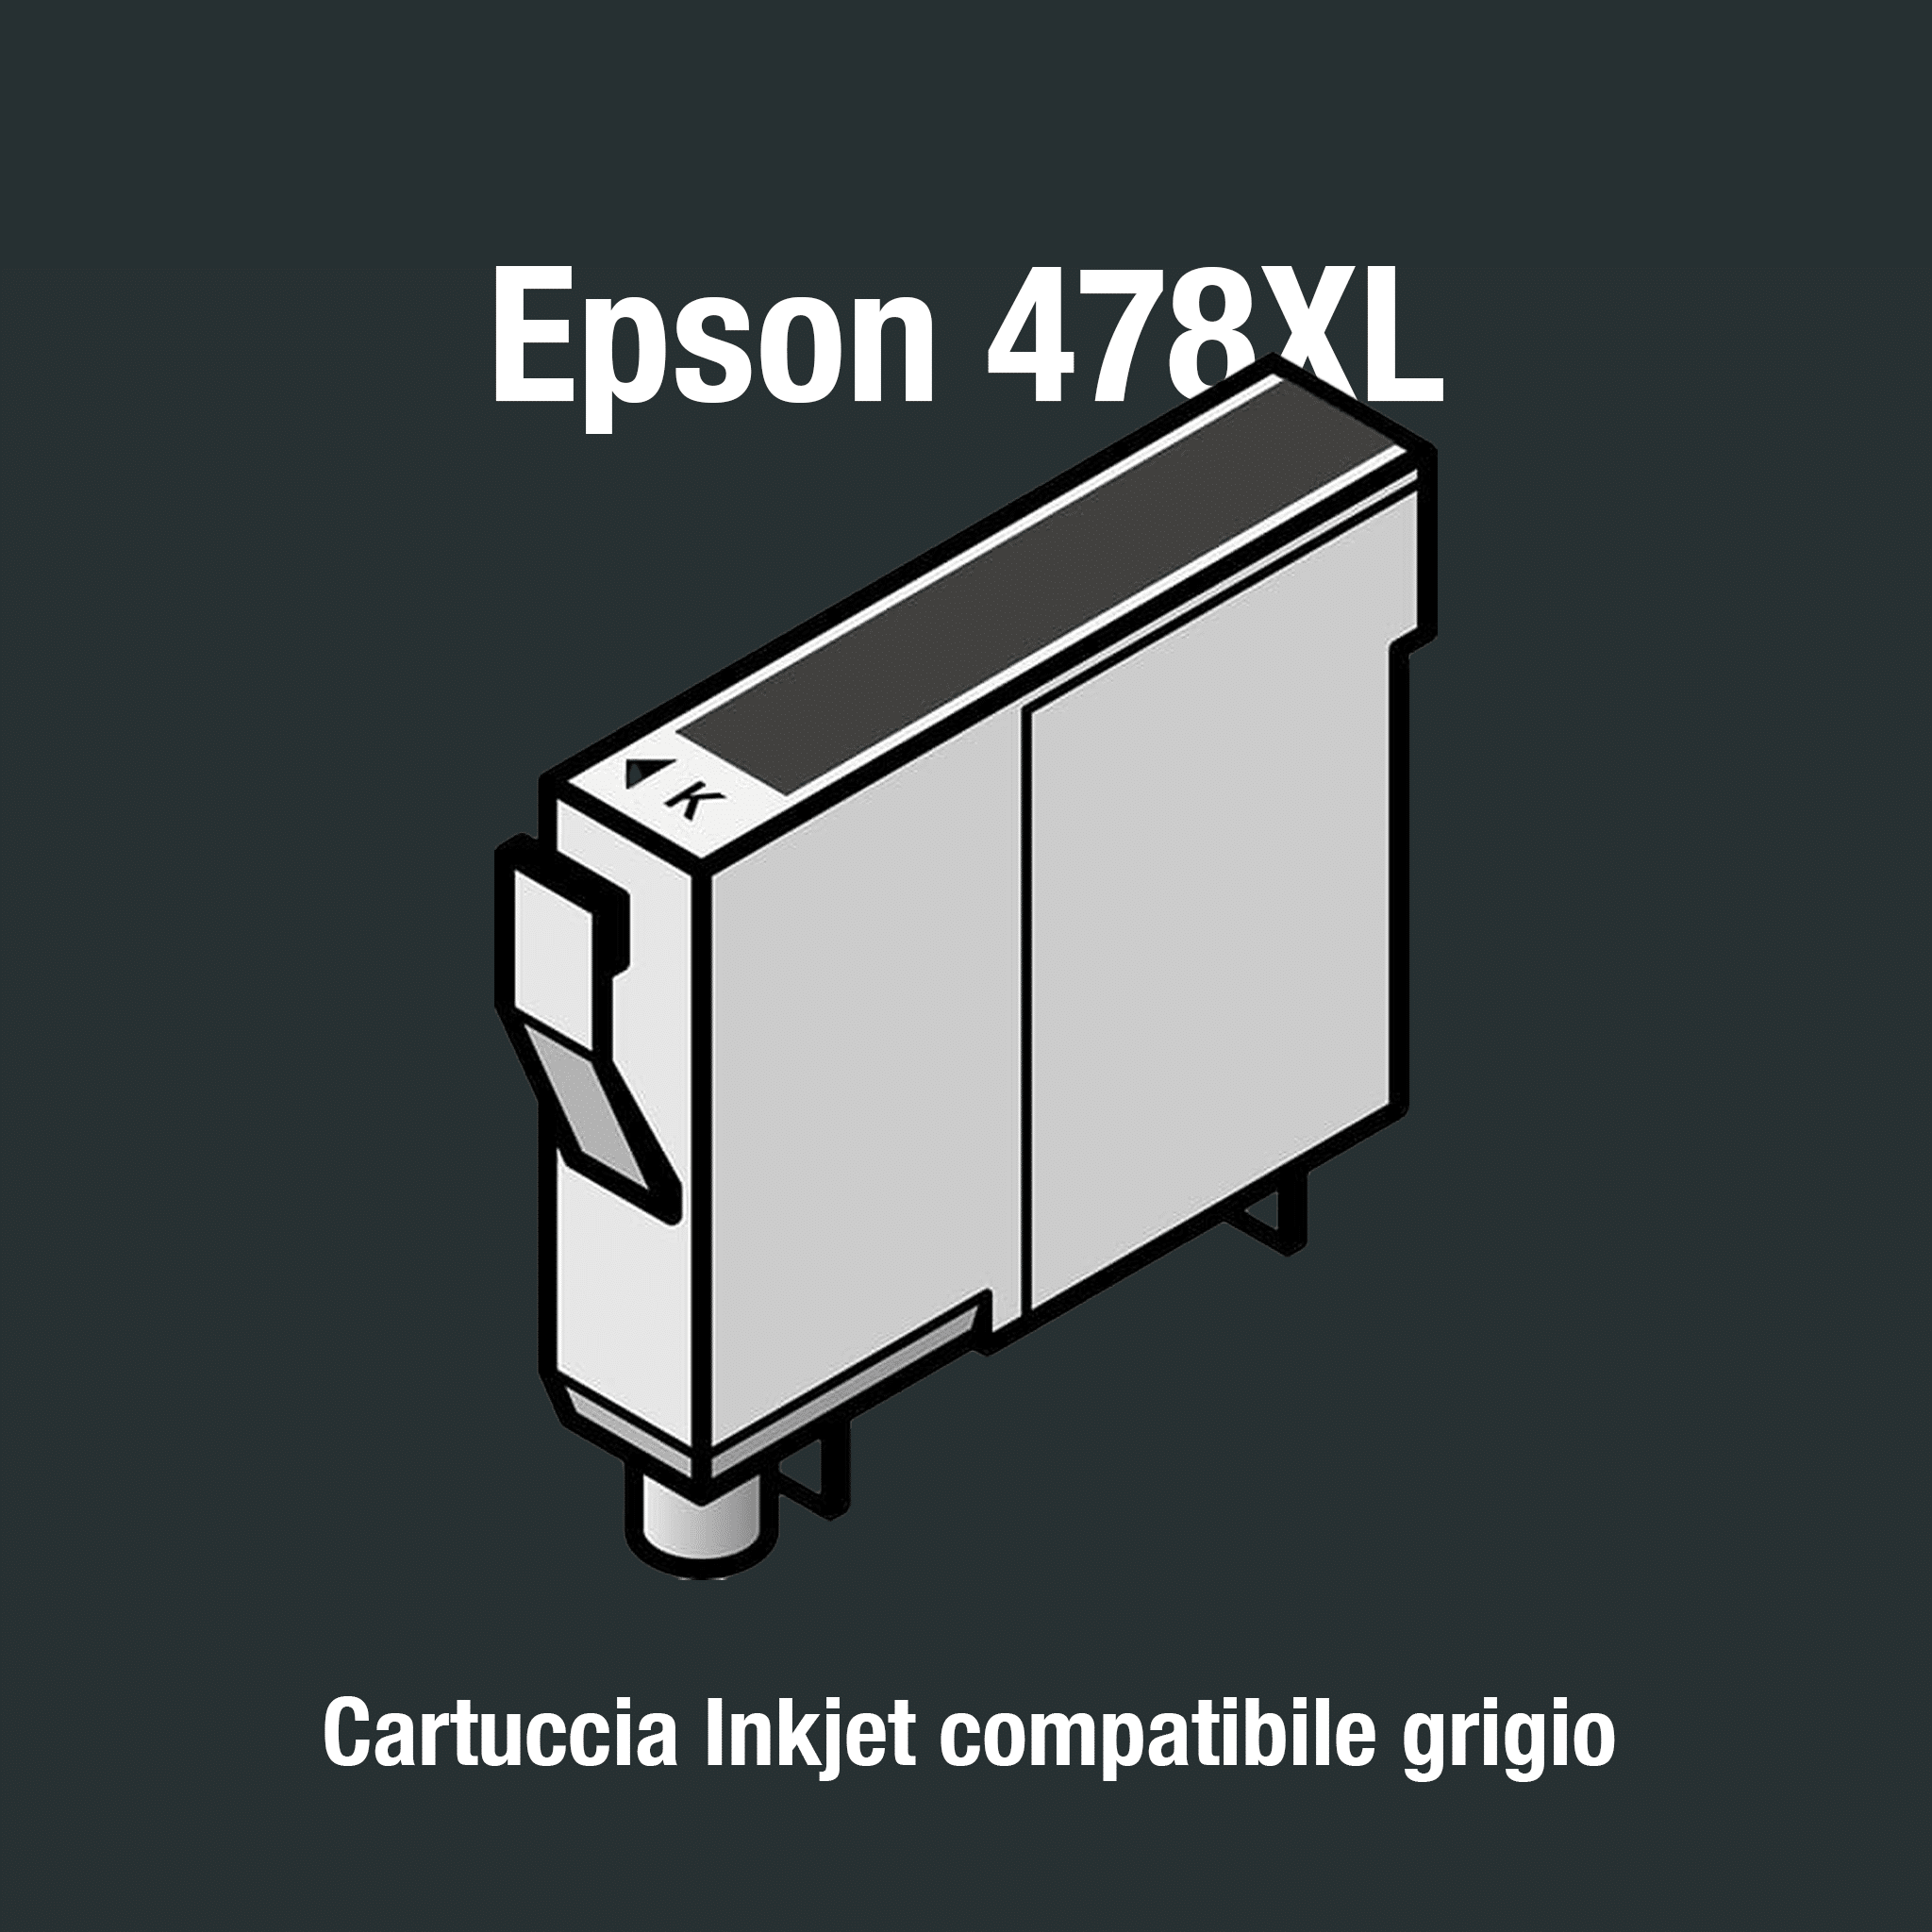 Epson478XL